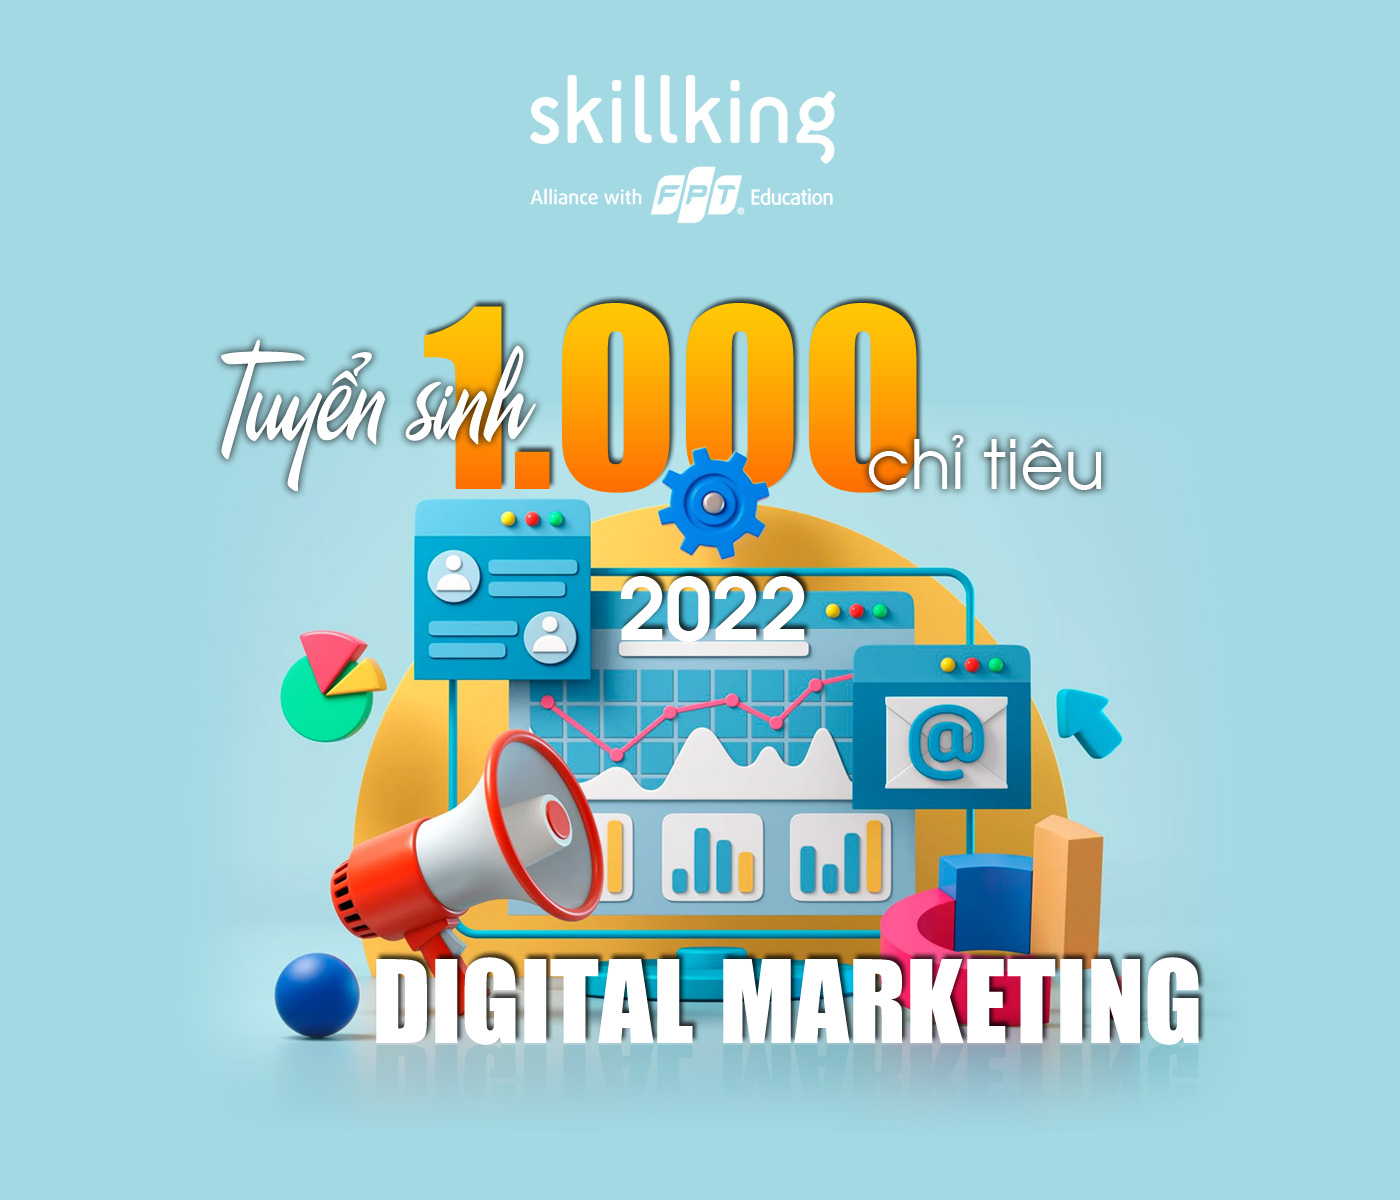 Năm 2022 FPT Skillking tuyển sinh 1.000 chỉ tiêu Digital Marketing - Ảnh 1